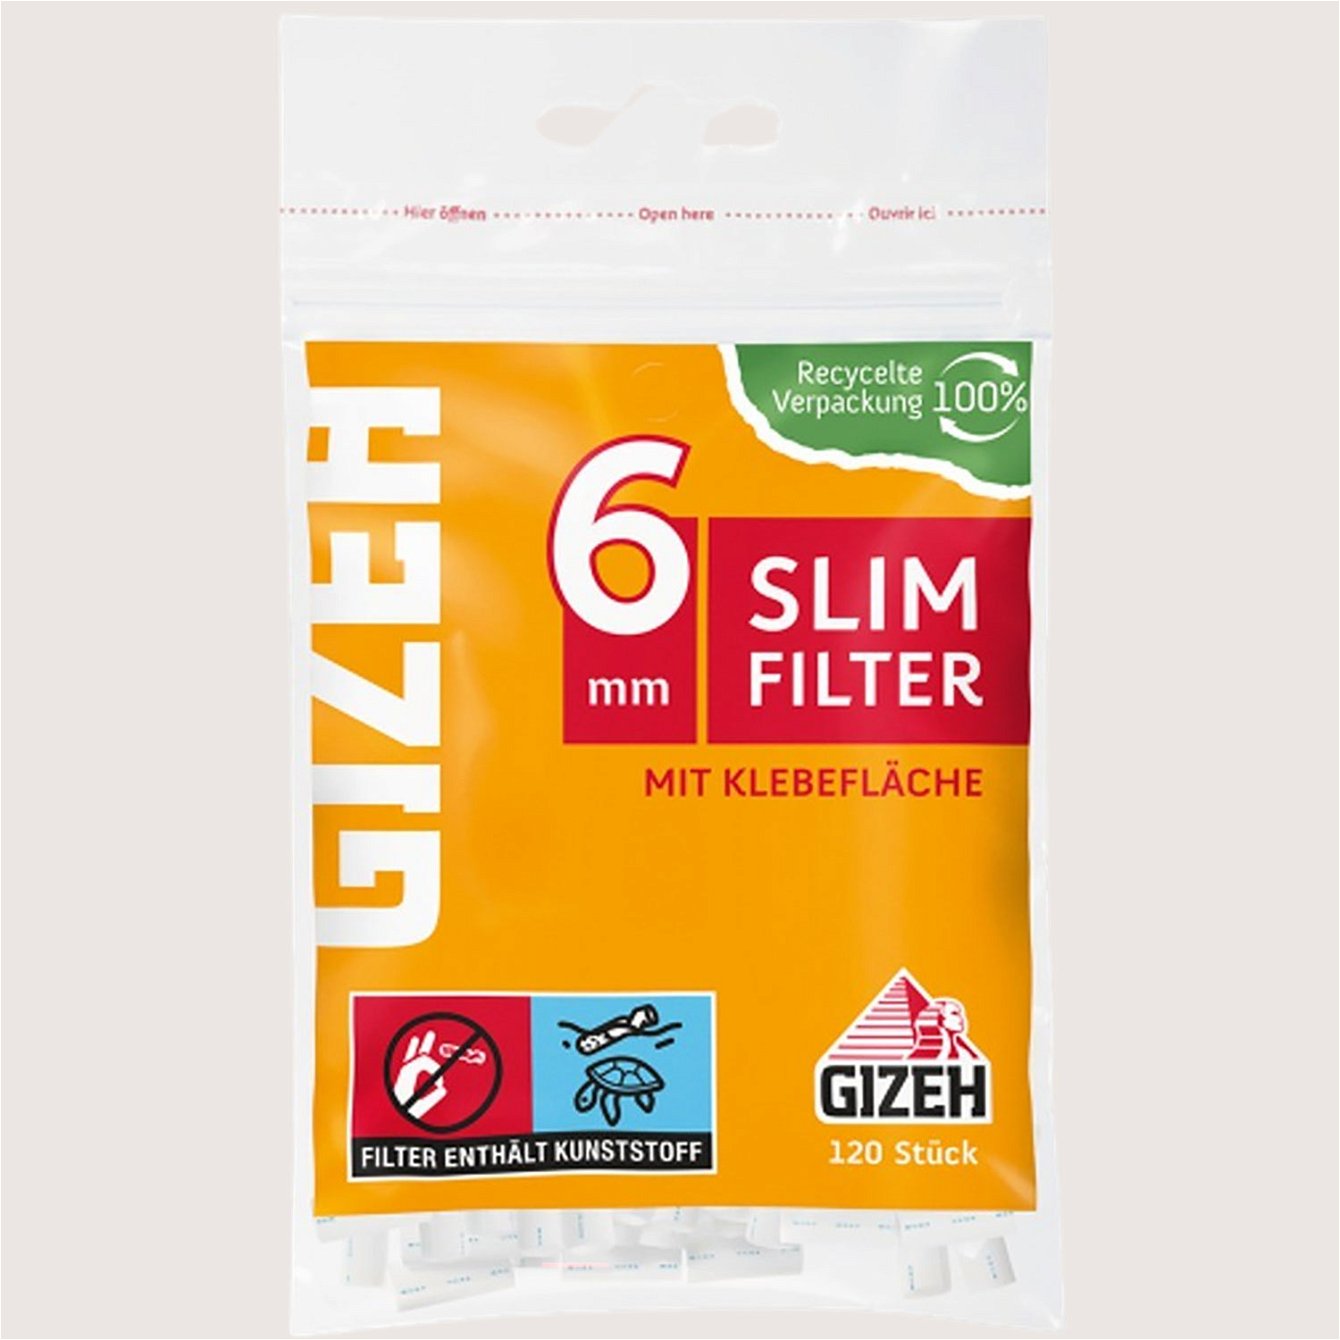 Gizeh Slim Filter 120 Filter